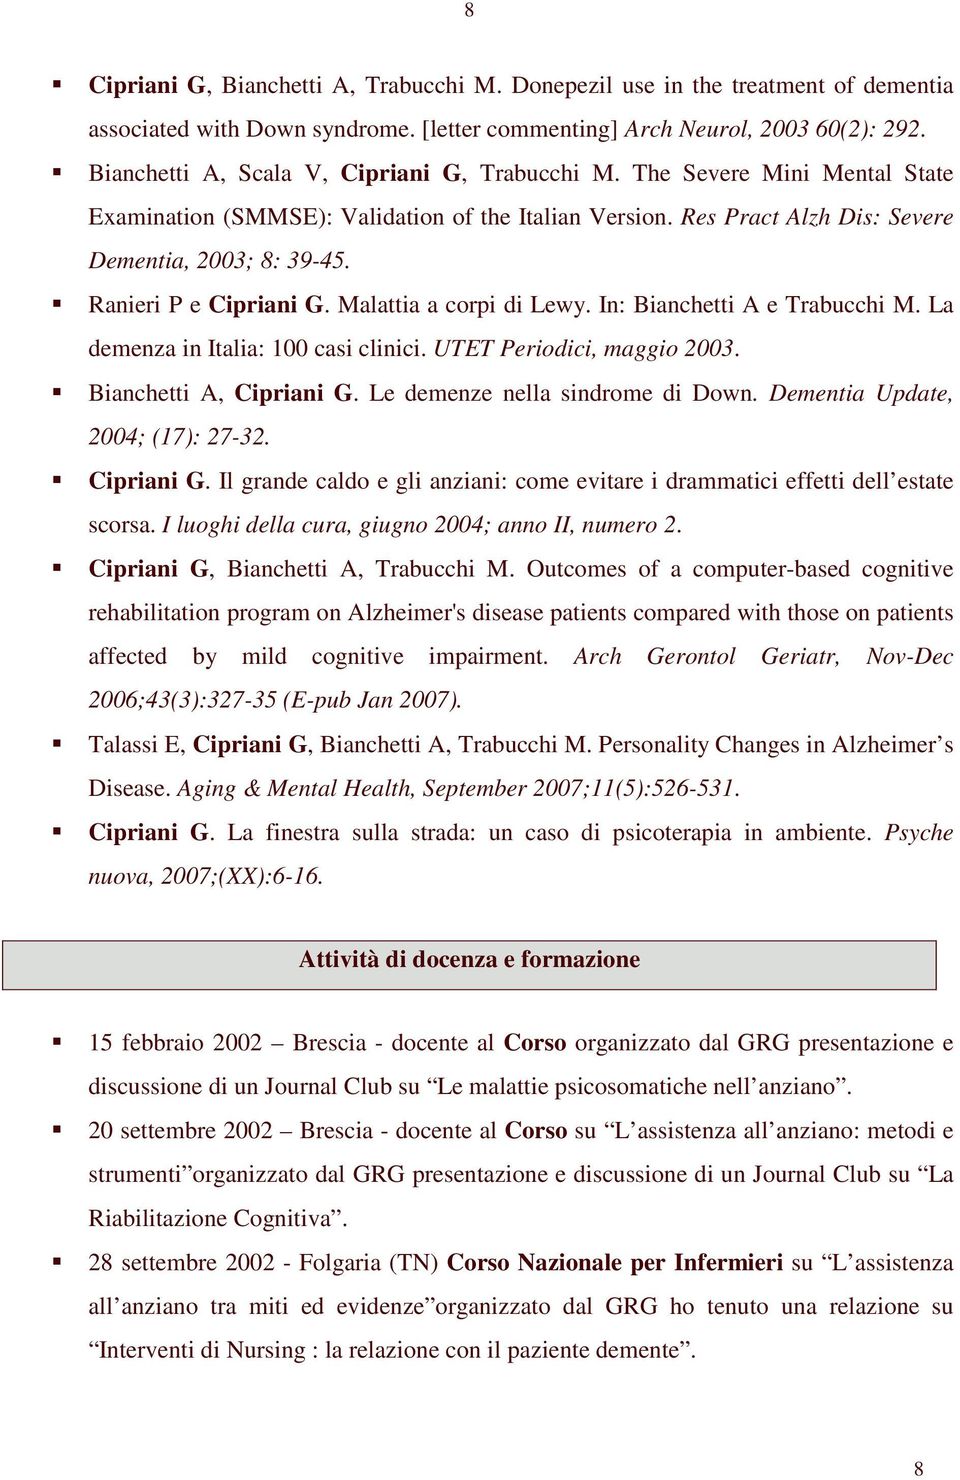 Ranieri P e Cipriani G. Malattia a corpi di Lewy. In: Bianchetti A e Trabucchi M. La demenza in Italia: 100 casi clinici. UTET Periodici, maggio 2003. Bianchetti A, Cipriani G.